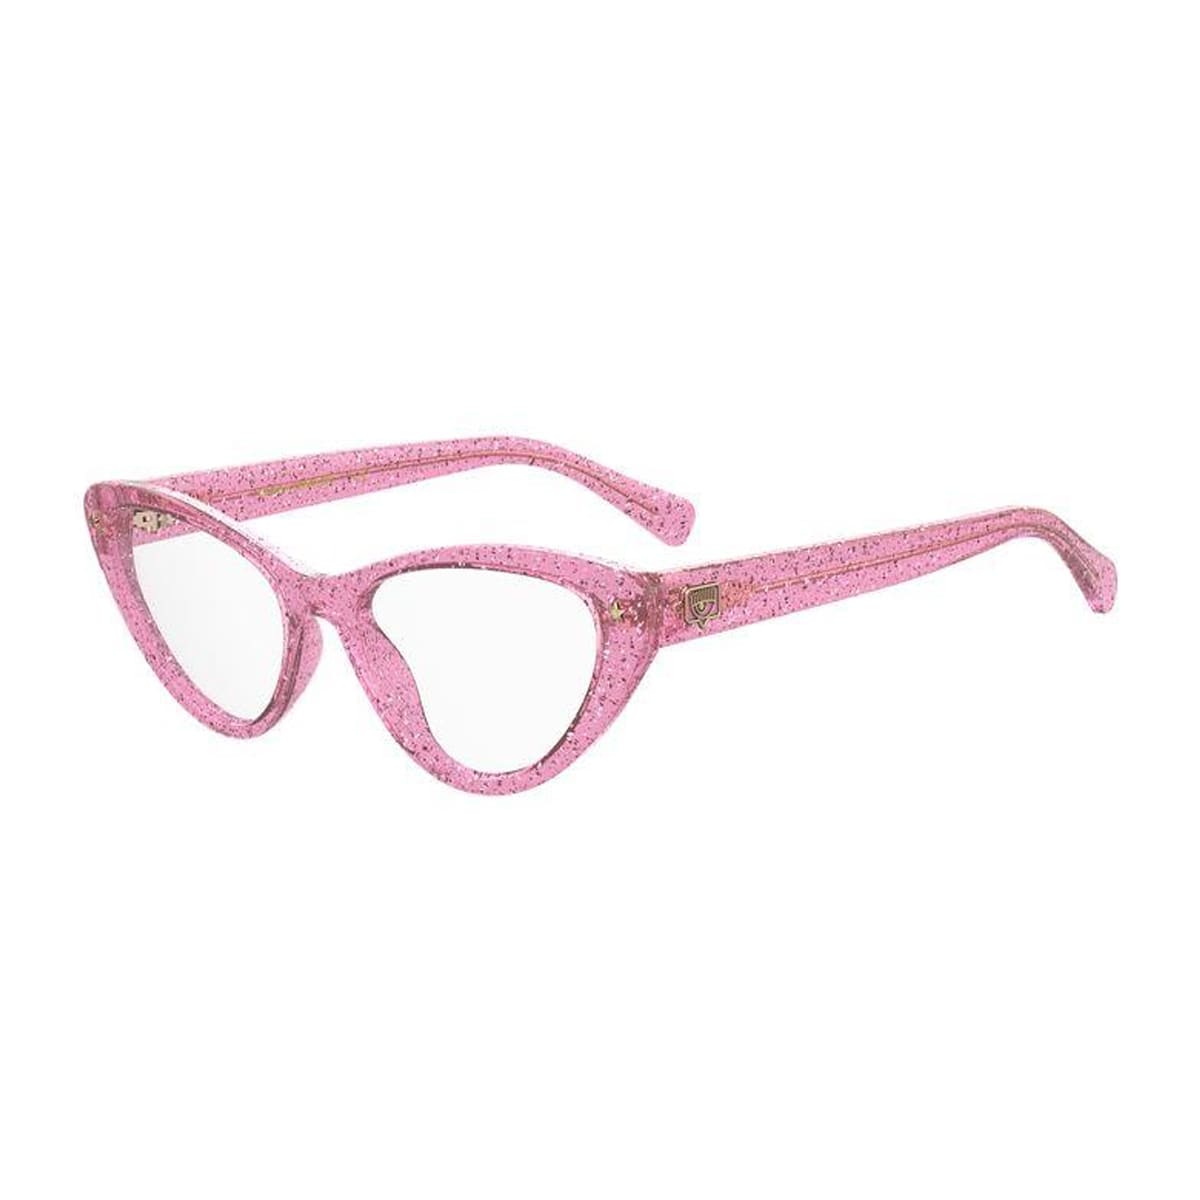 Cf 7012 Pink Glitter Glasses